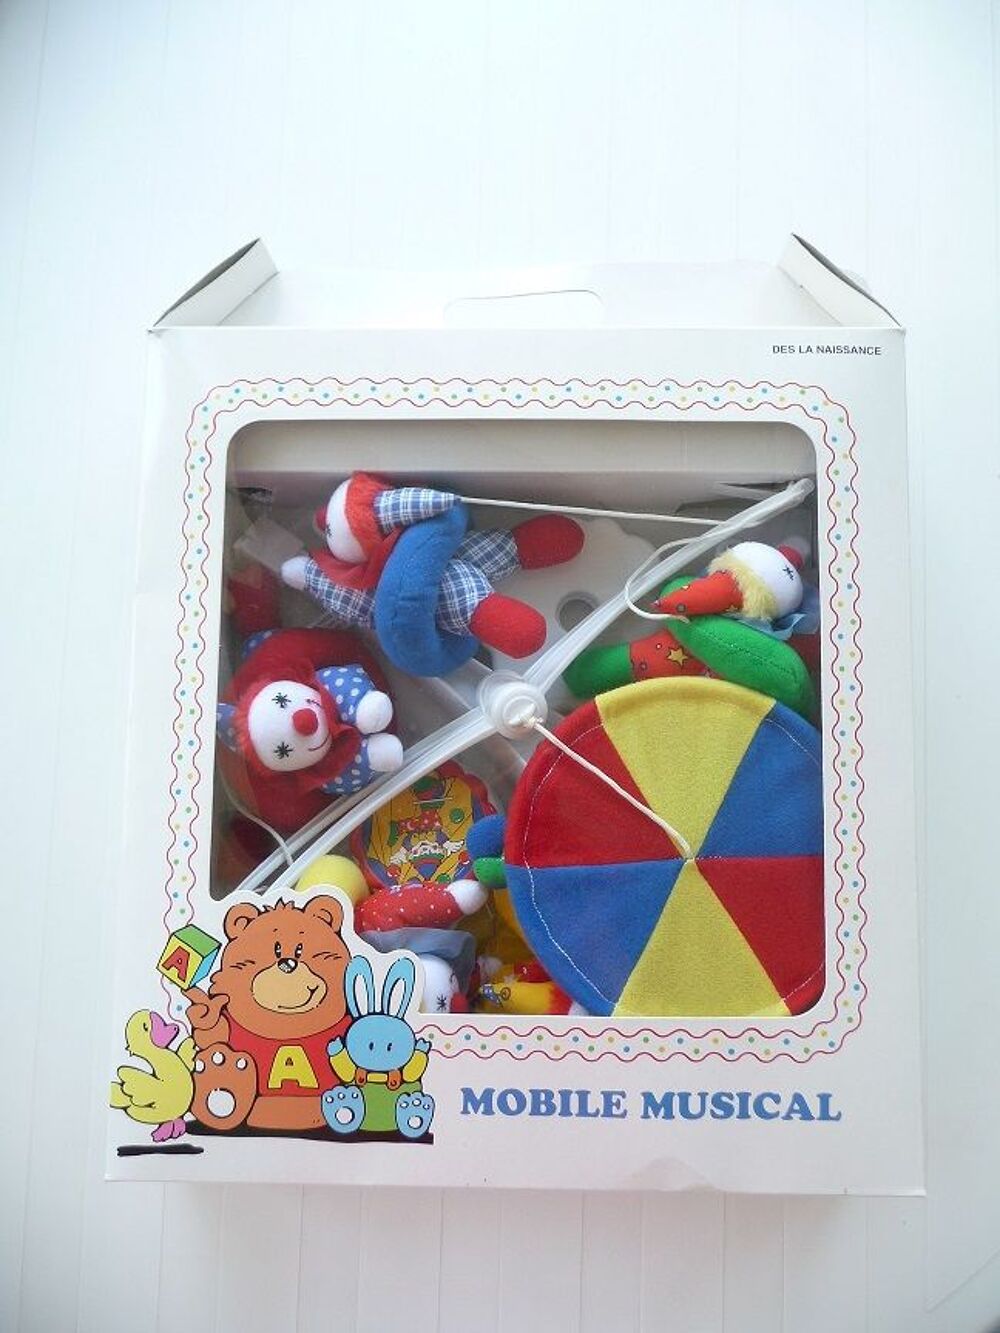 Mobile musical clowns et boite musicale dans son emballage Jeux / jouets